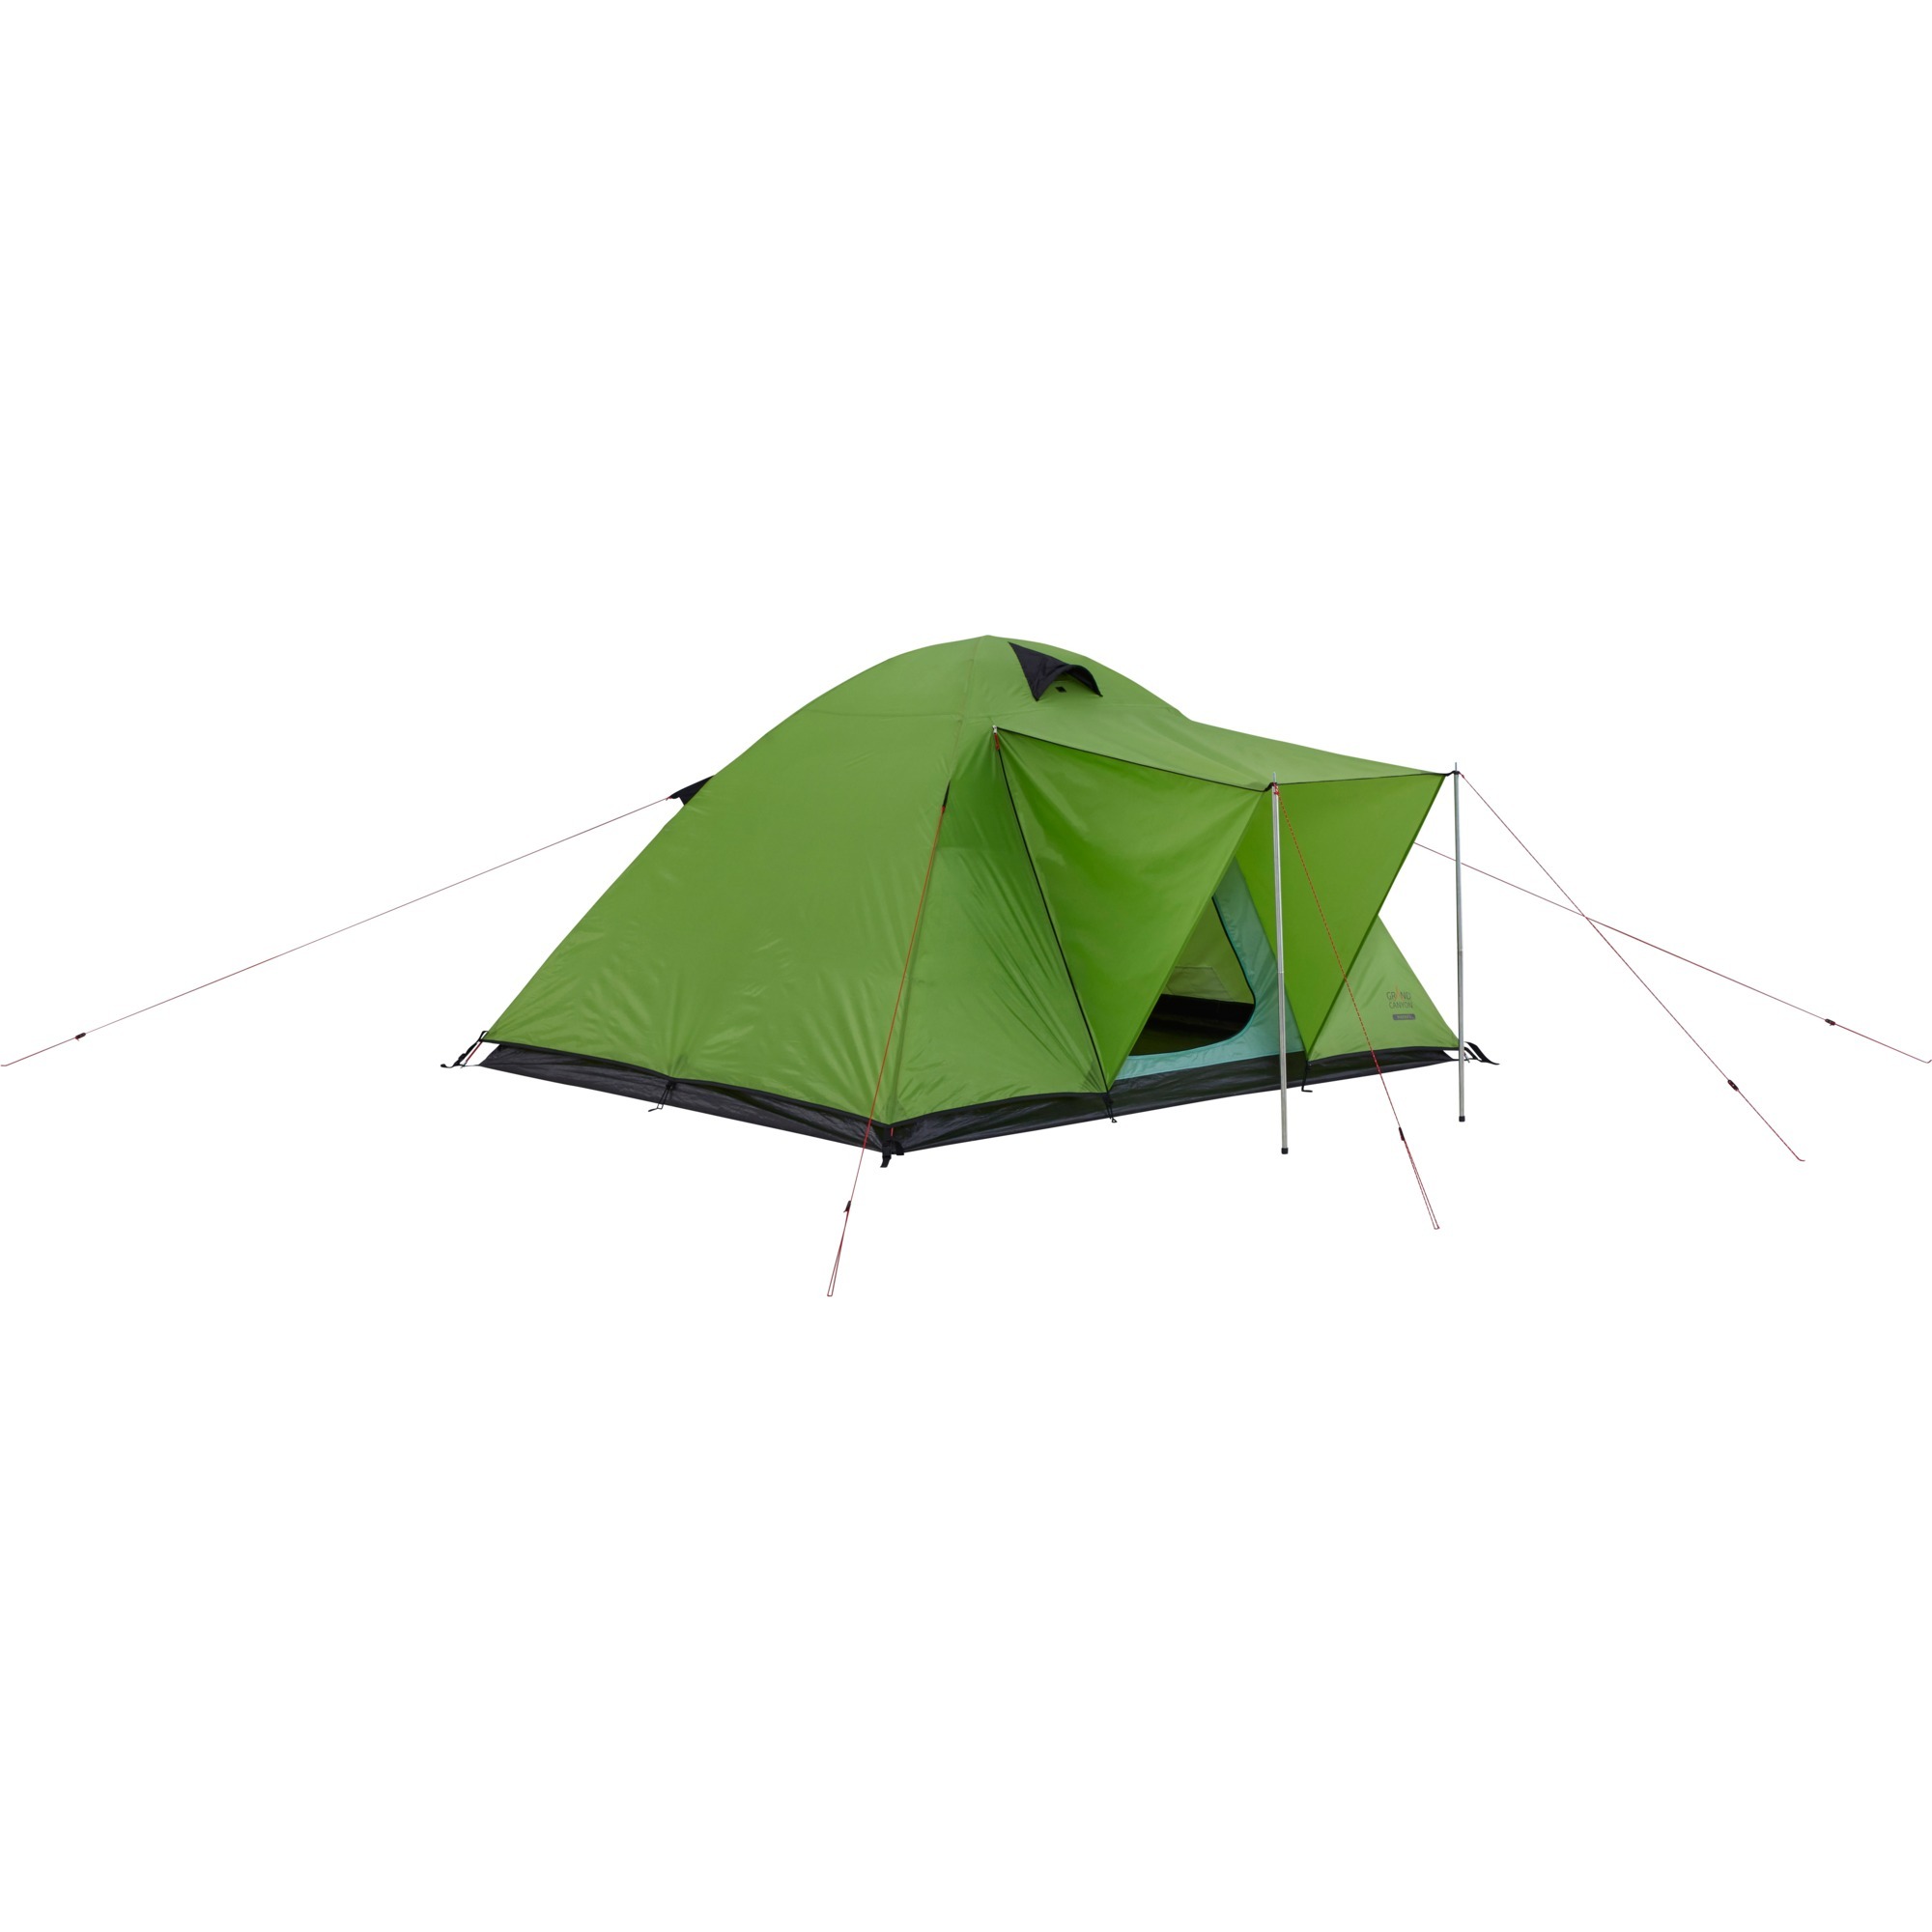 602012, Tent